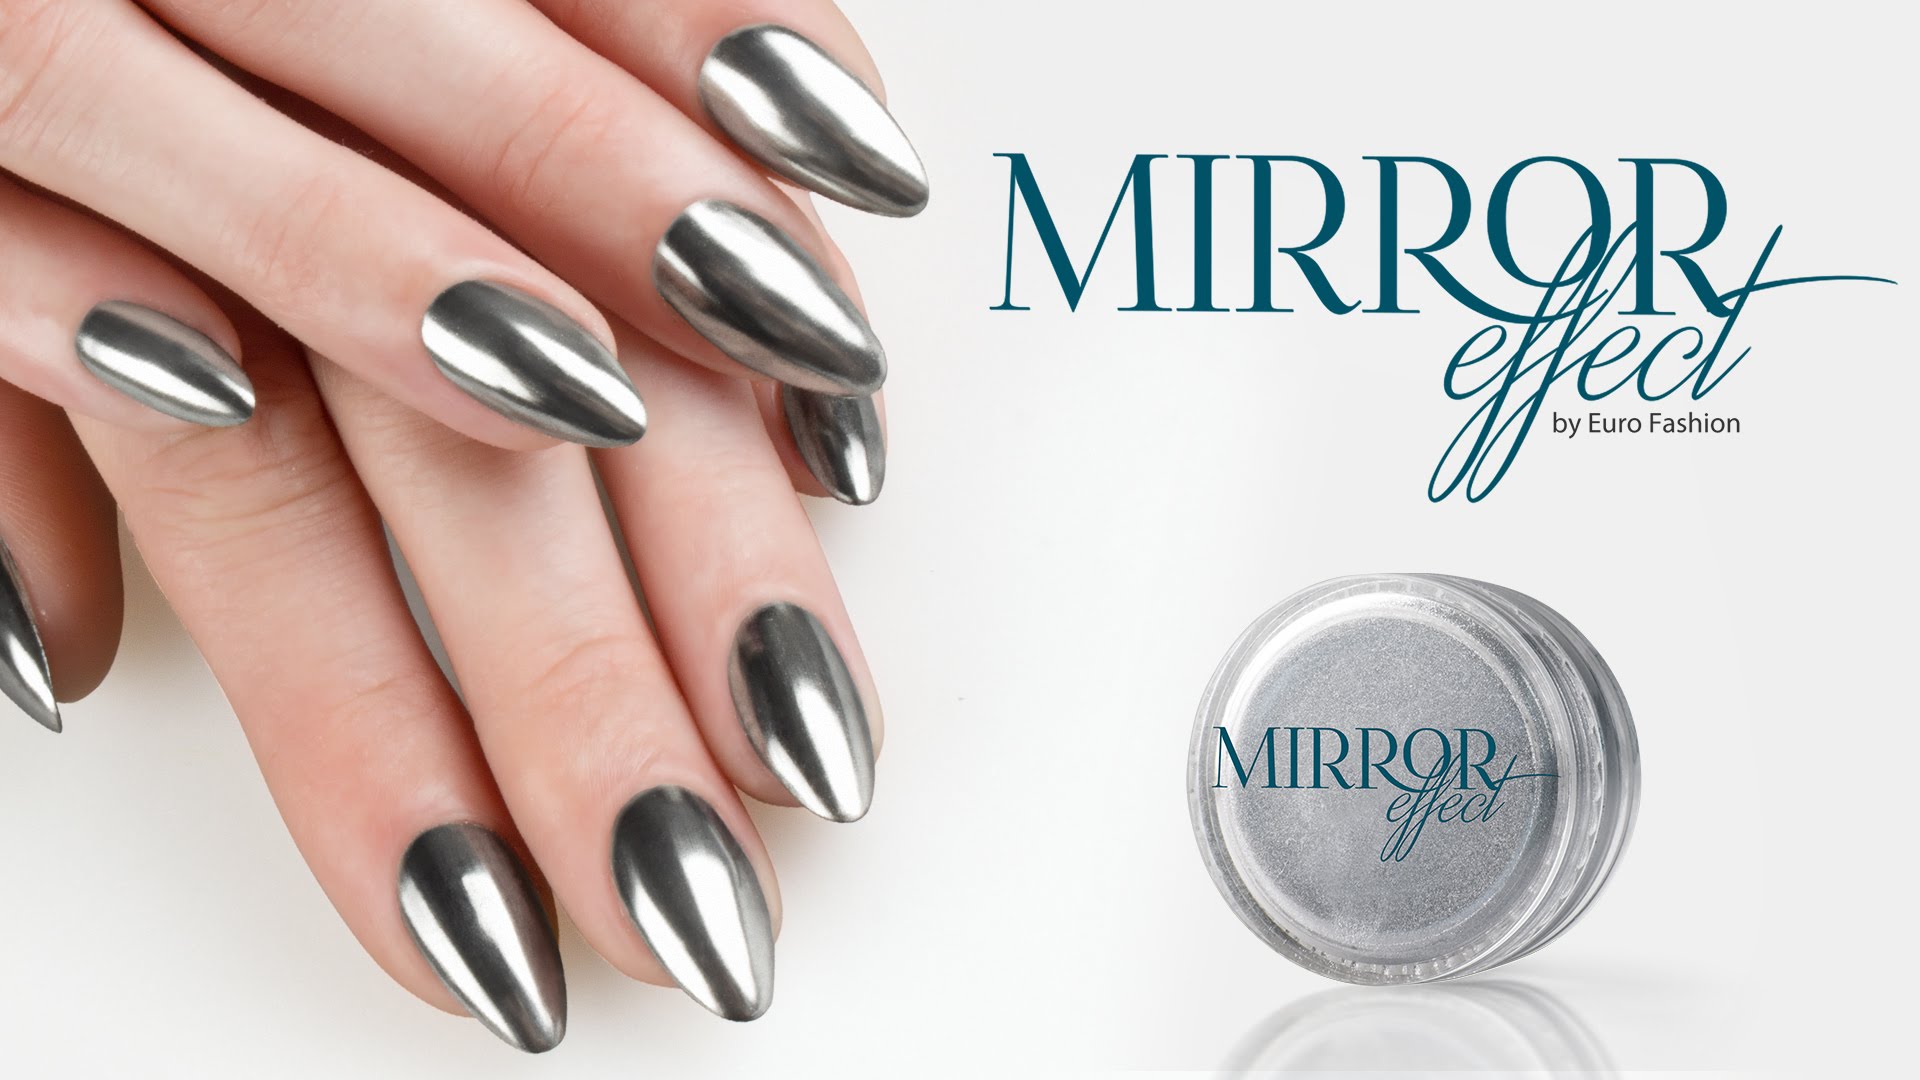 Mirror Effect Nails Euro Fashion - YouTube